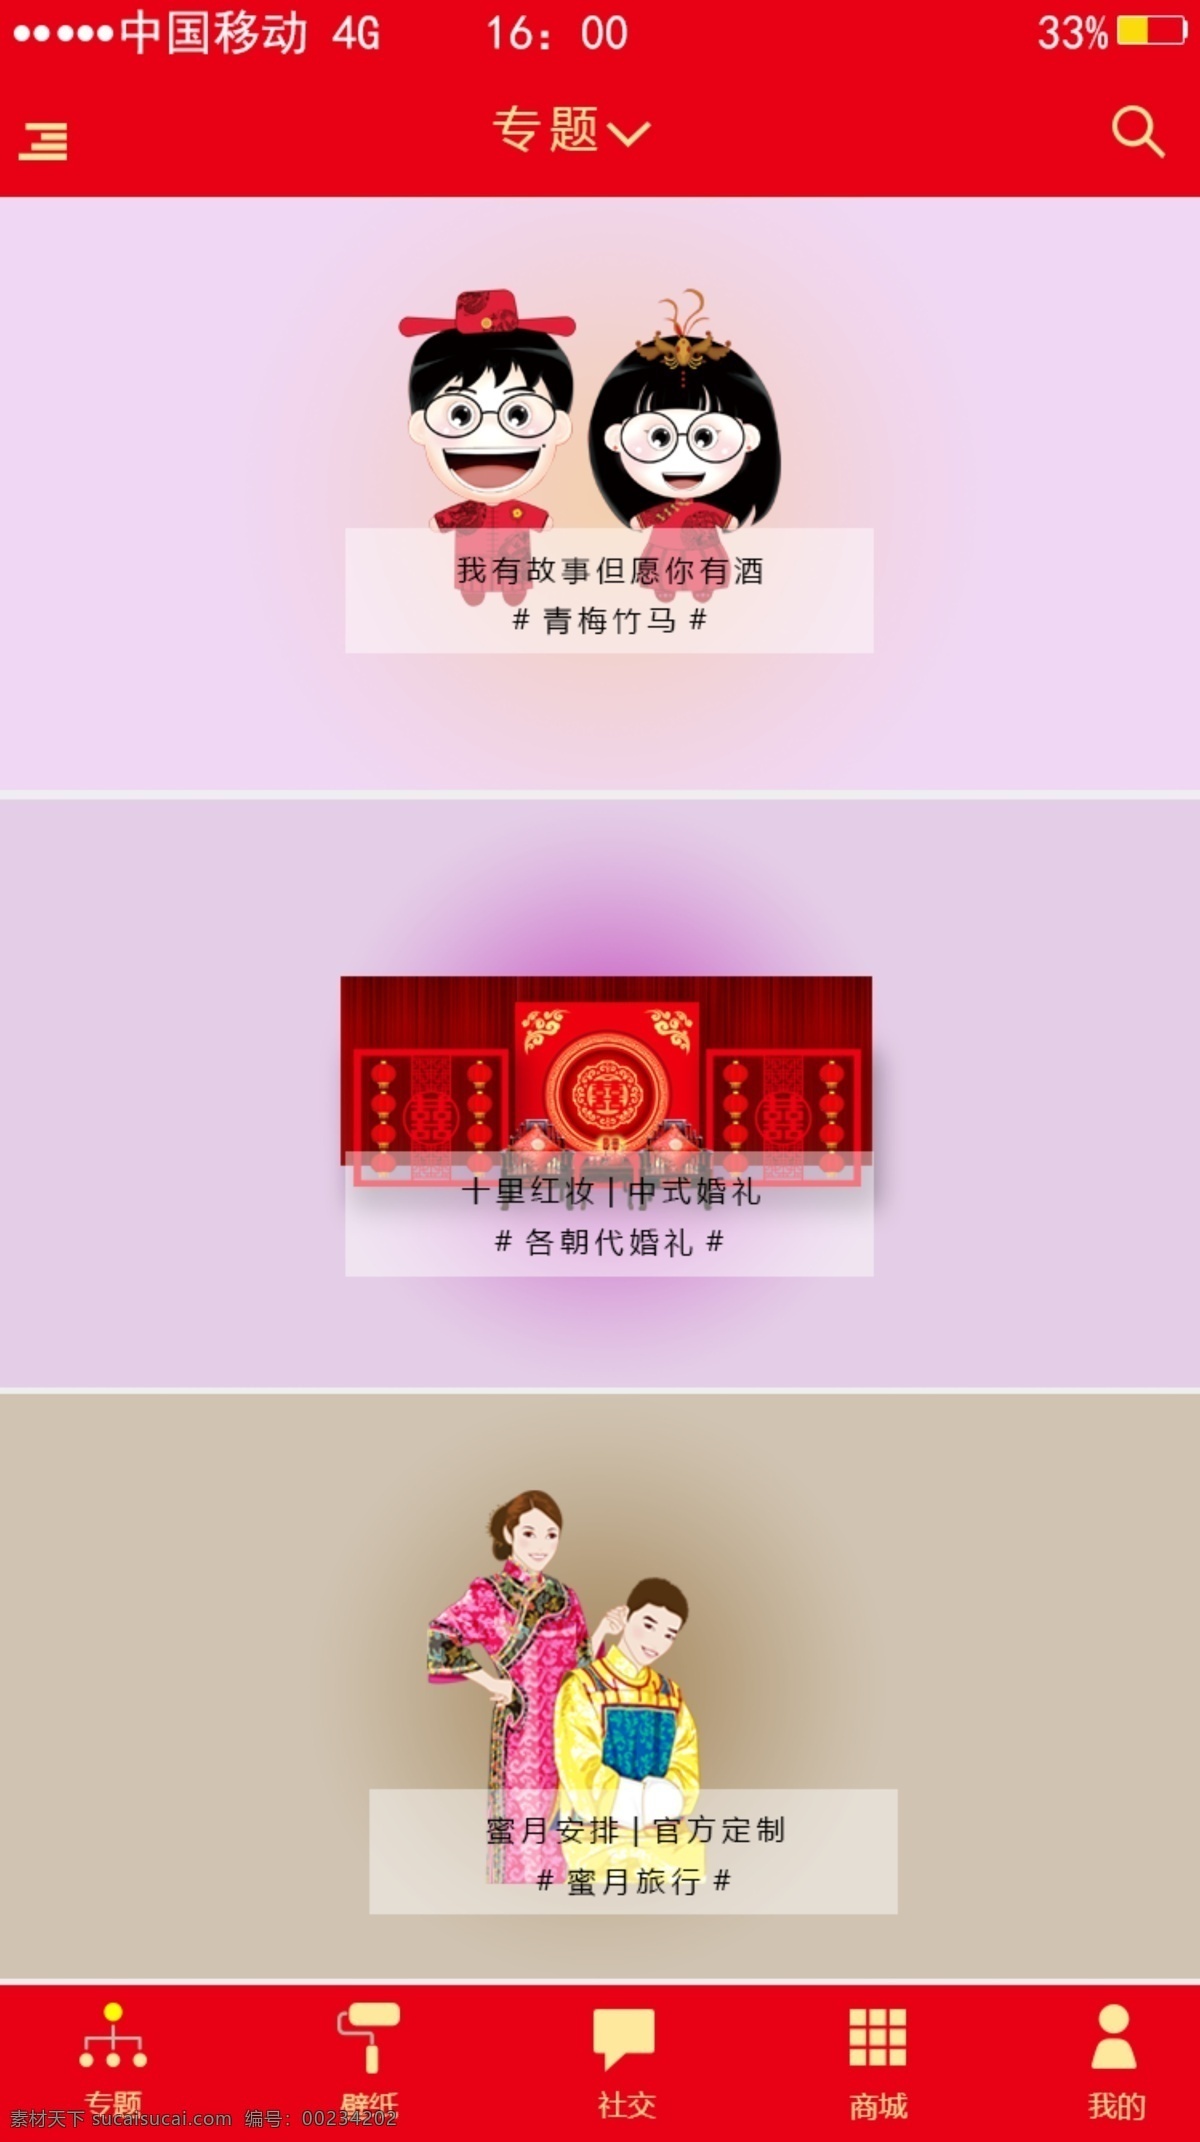 中国 风 西 窗 烛 app 界面设计 中国风 婚嫁 十里红妆 西窗烛 传统 简约